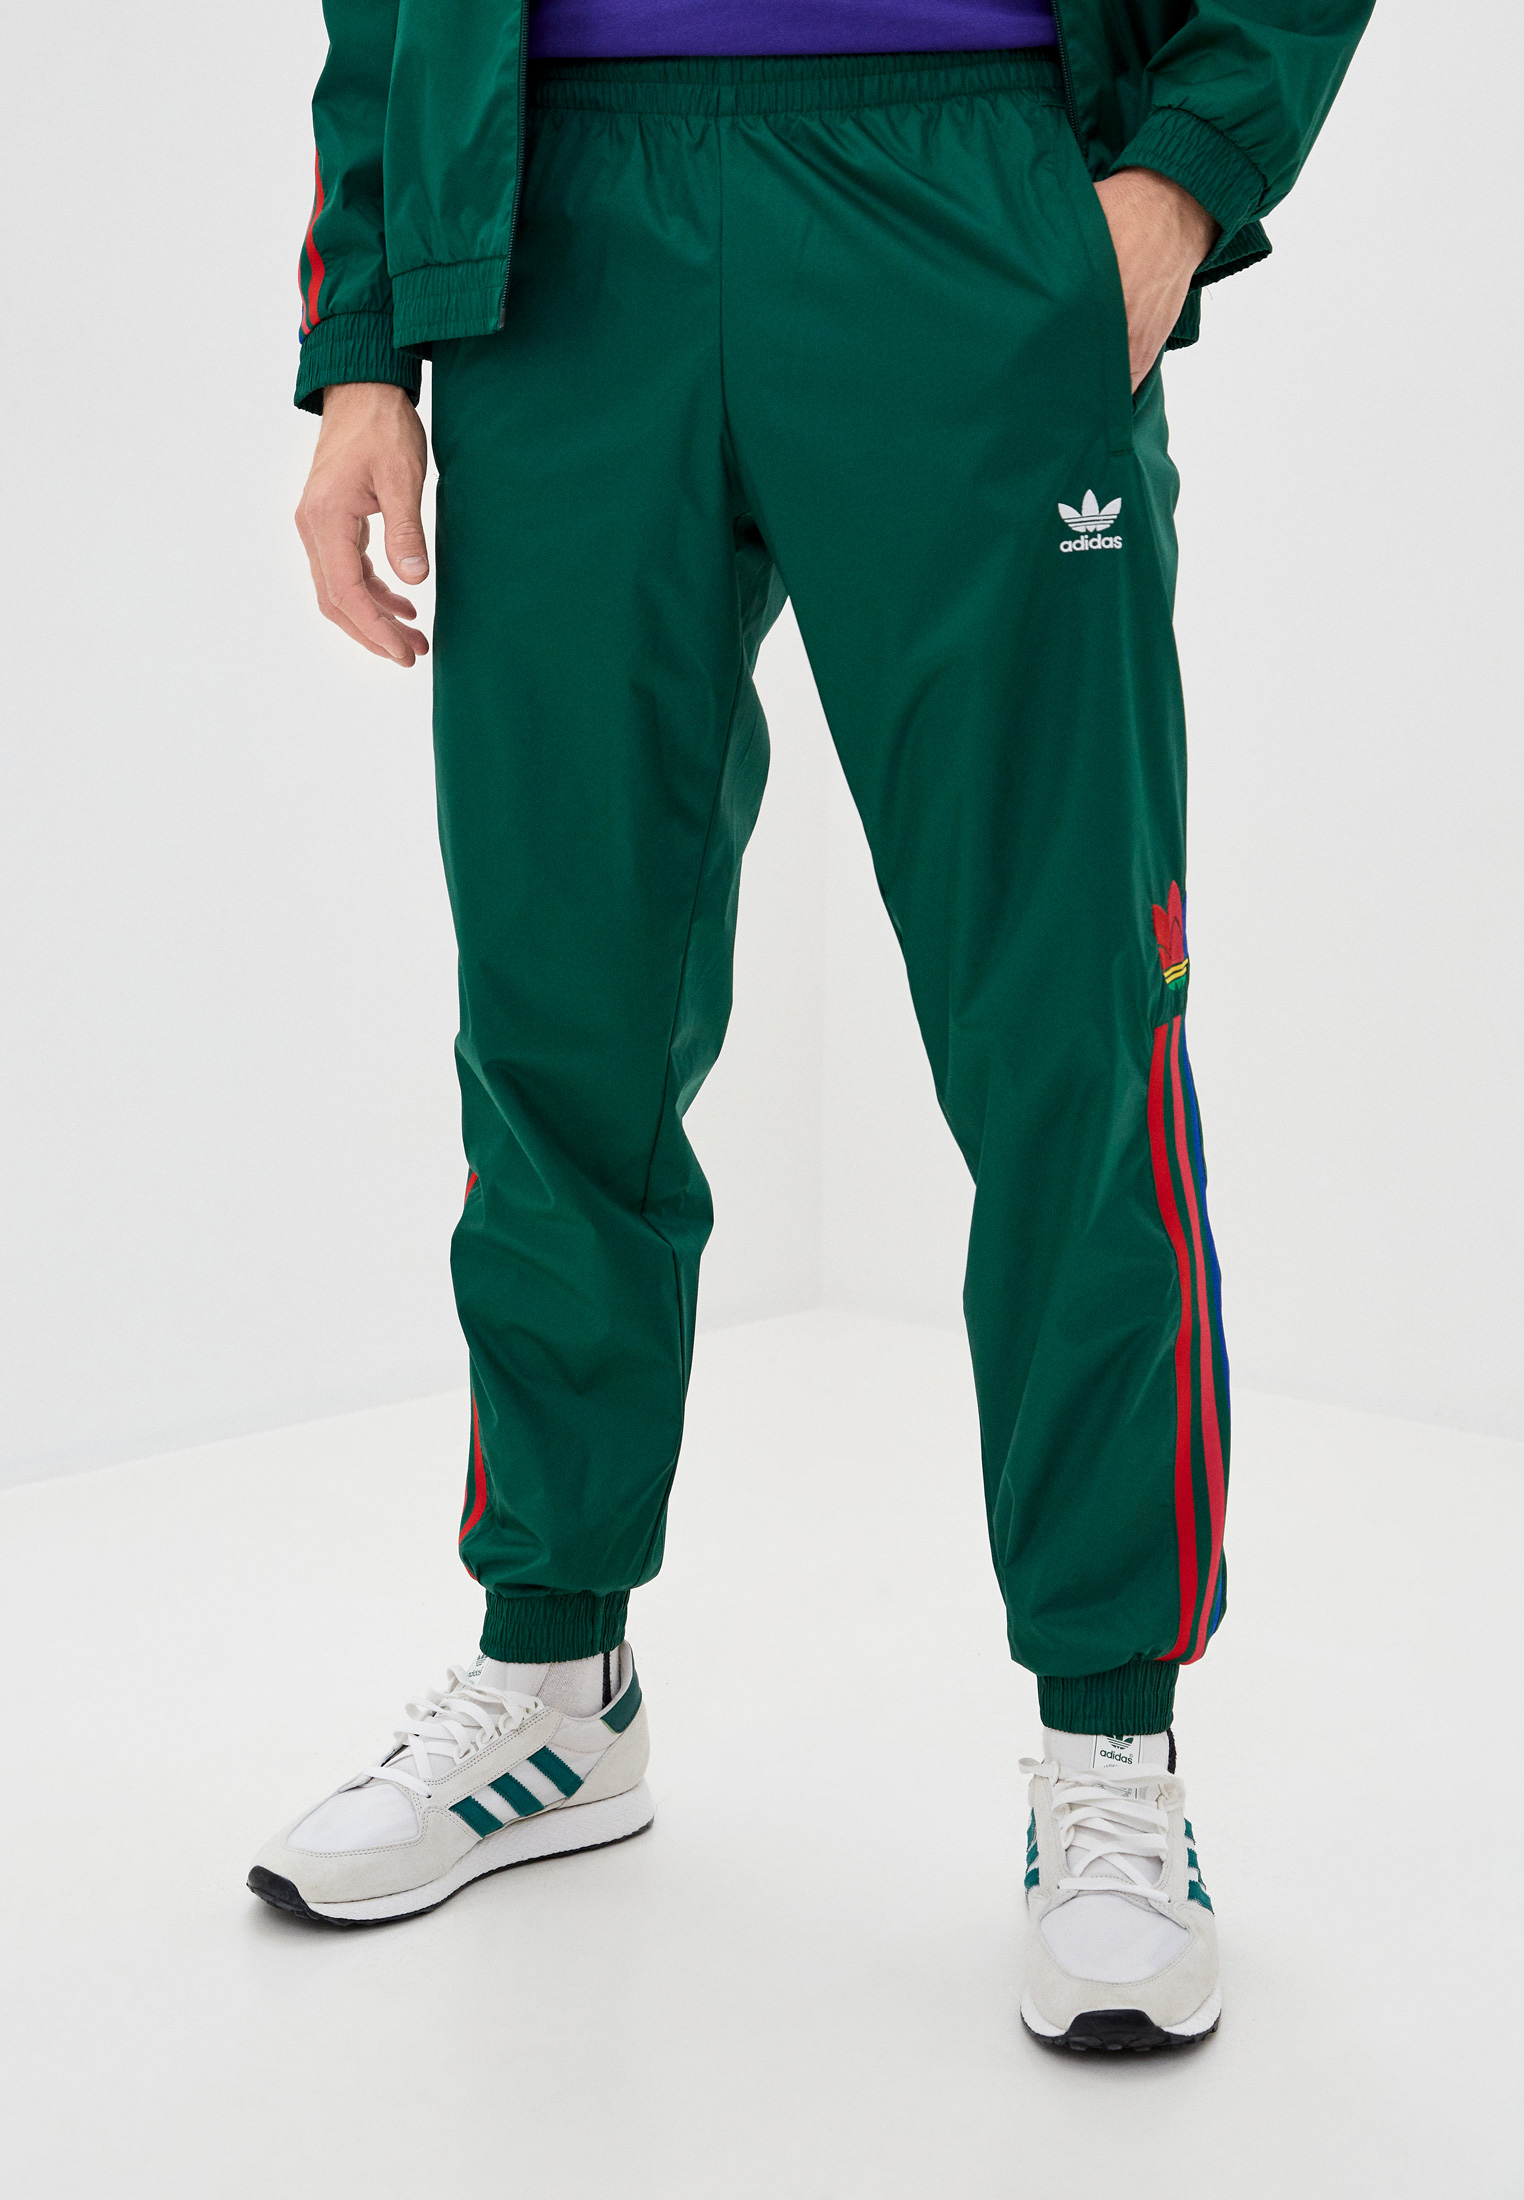 Адидас зеленый спортивный. Спортивные штаны адидас ориджинал. Ge0843 штаны adidas. Адидас ориджинал штаны зеленые. Штаны adidas Originals зеленые.